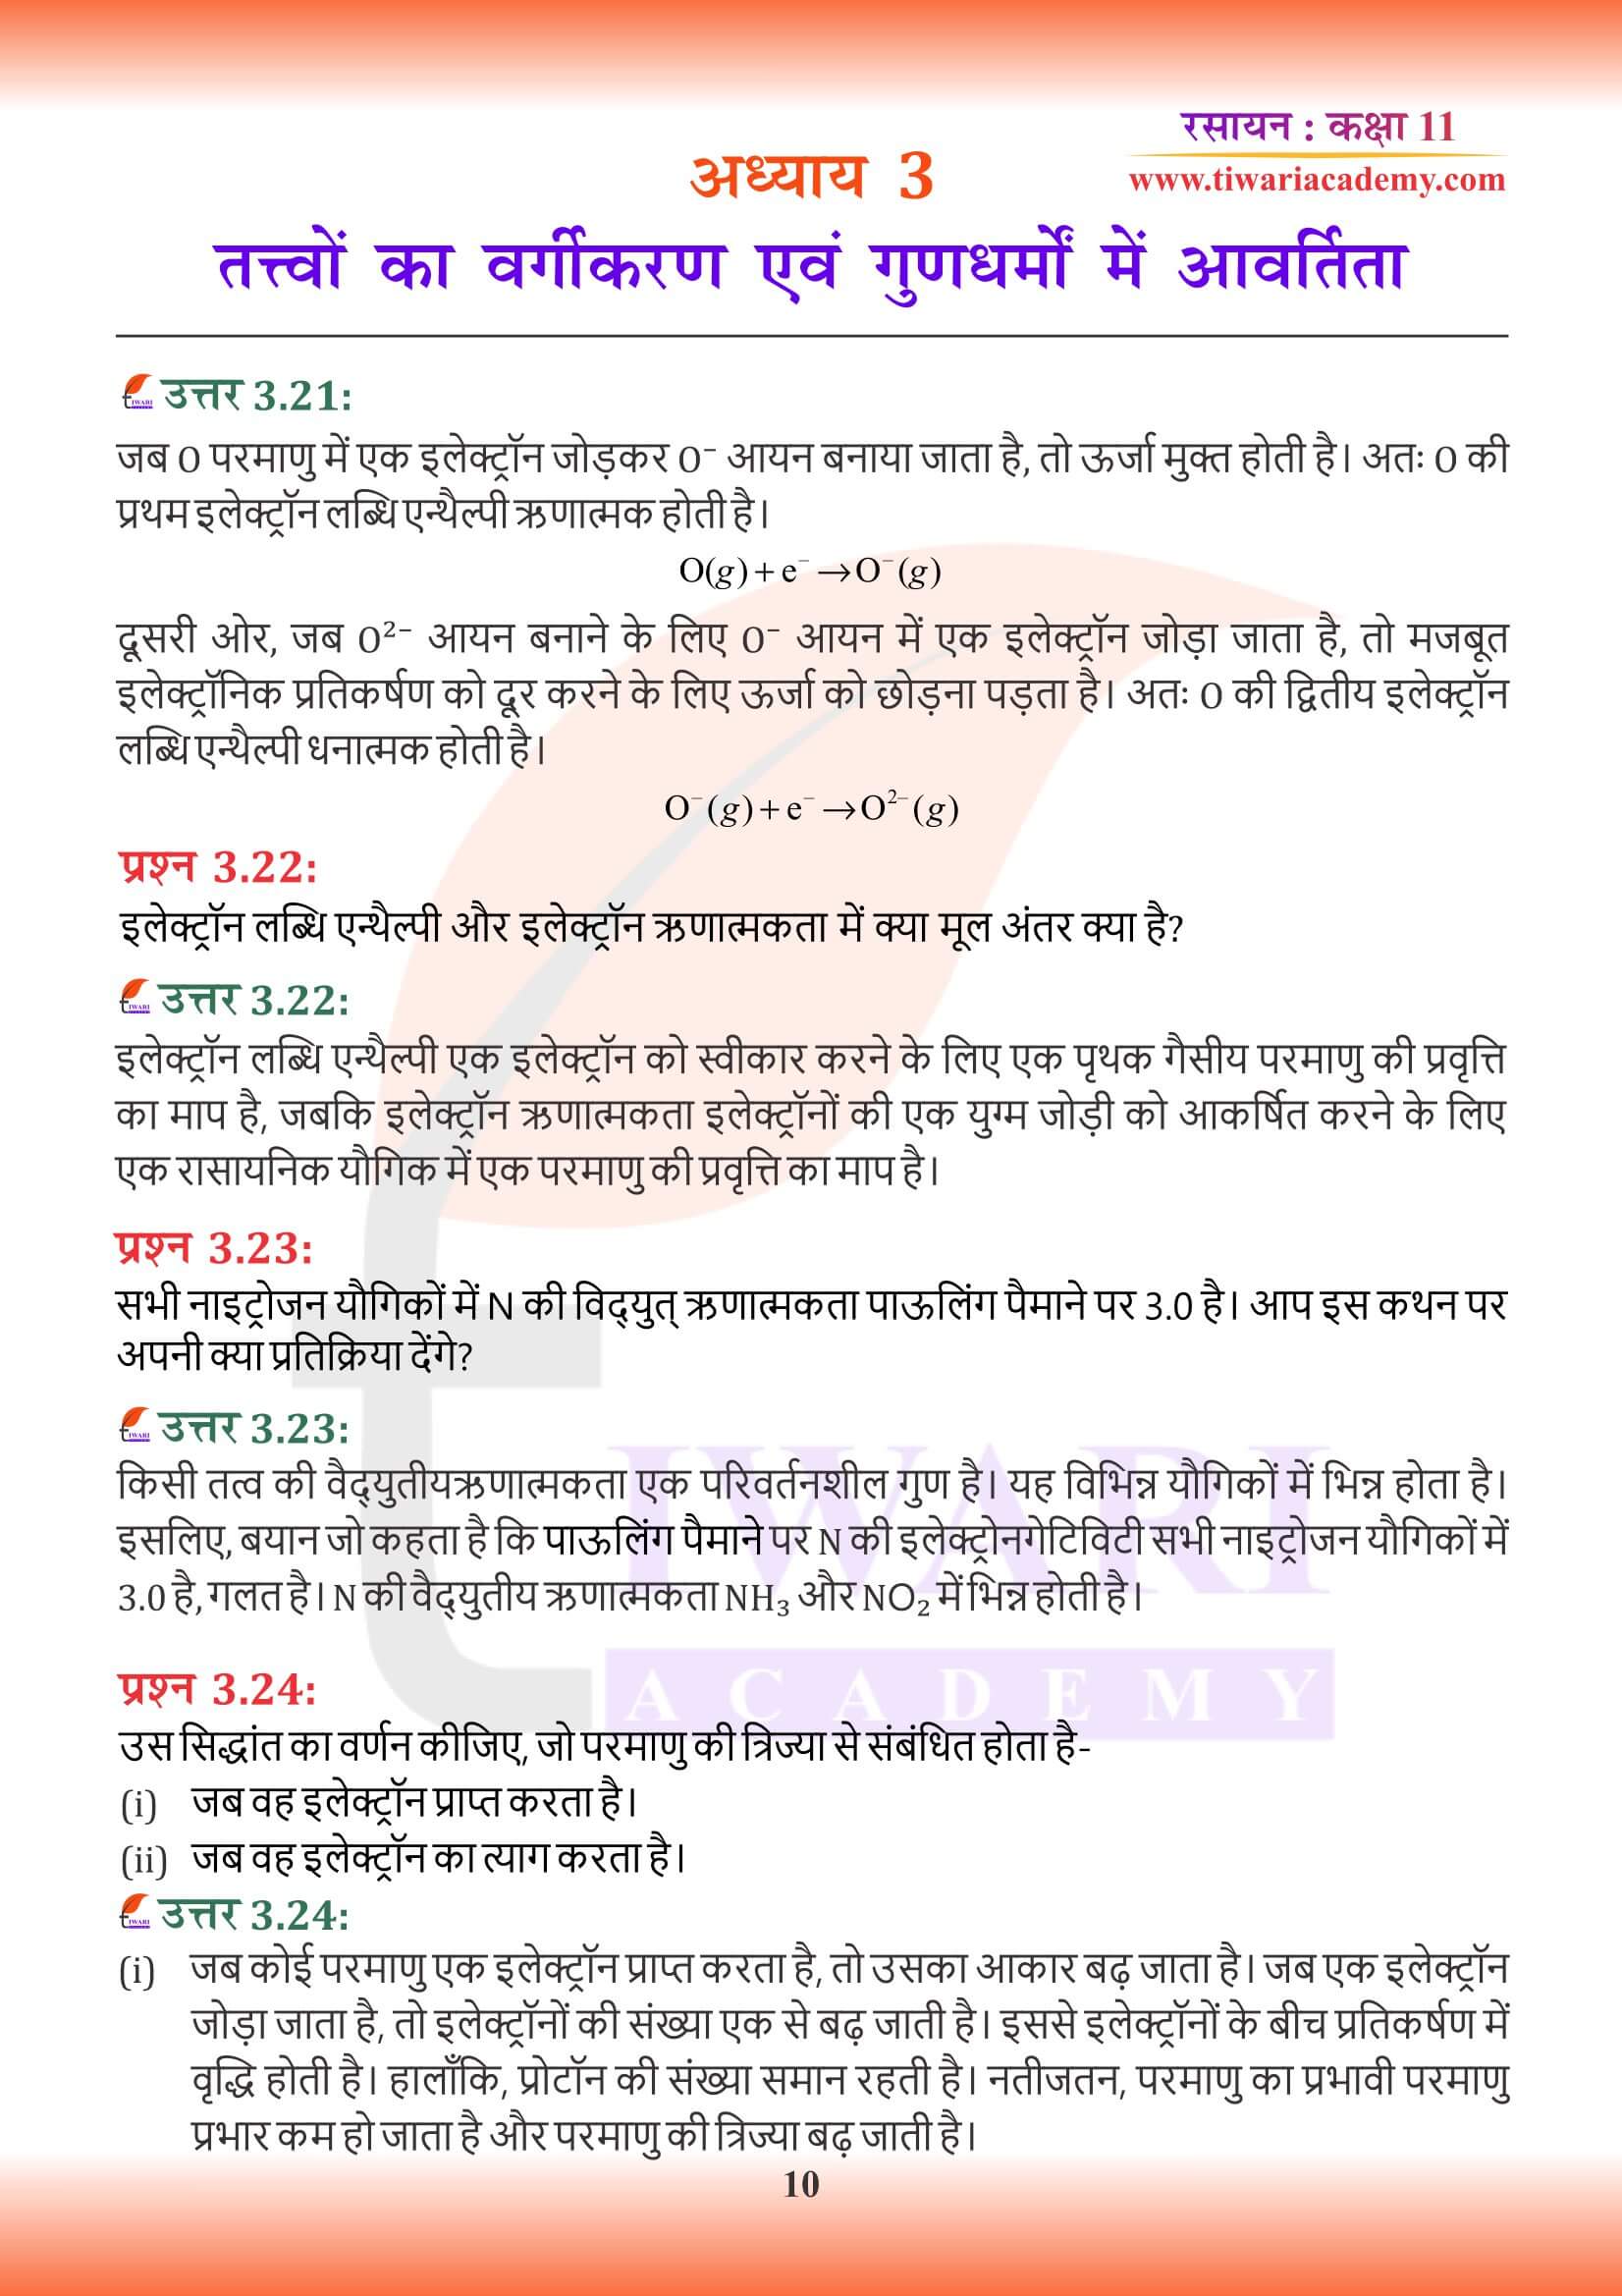 कक्षा 11 रसायन अध्याय 3 हिंदी मीडियम में हल